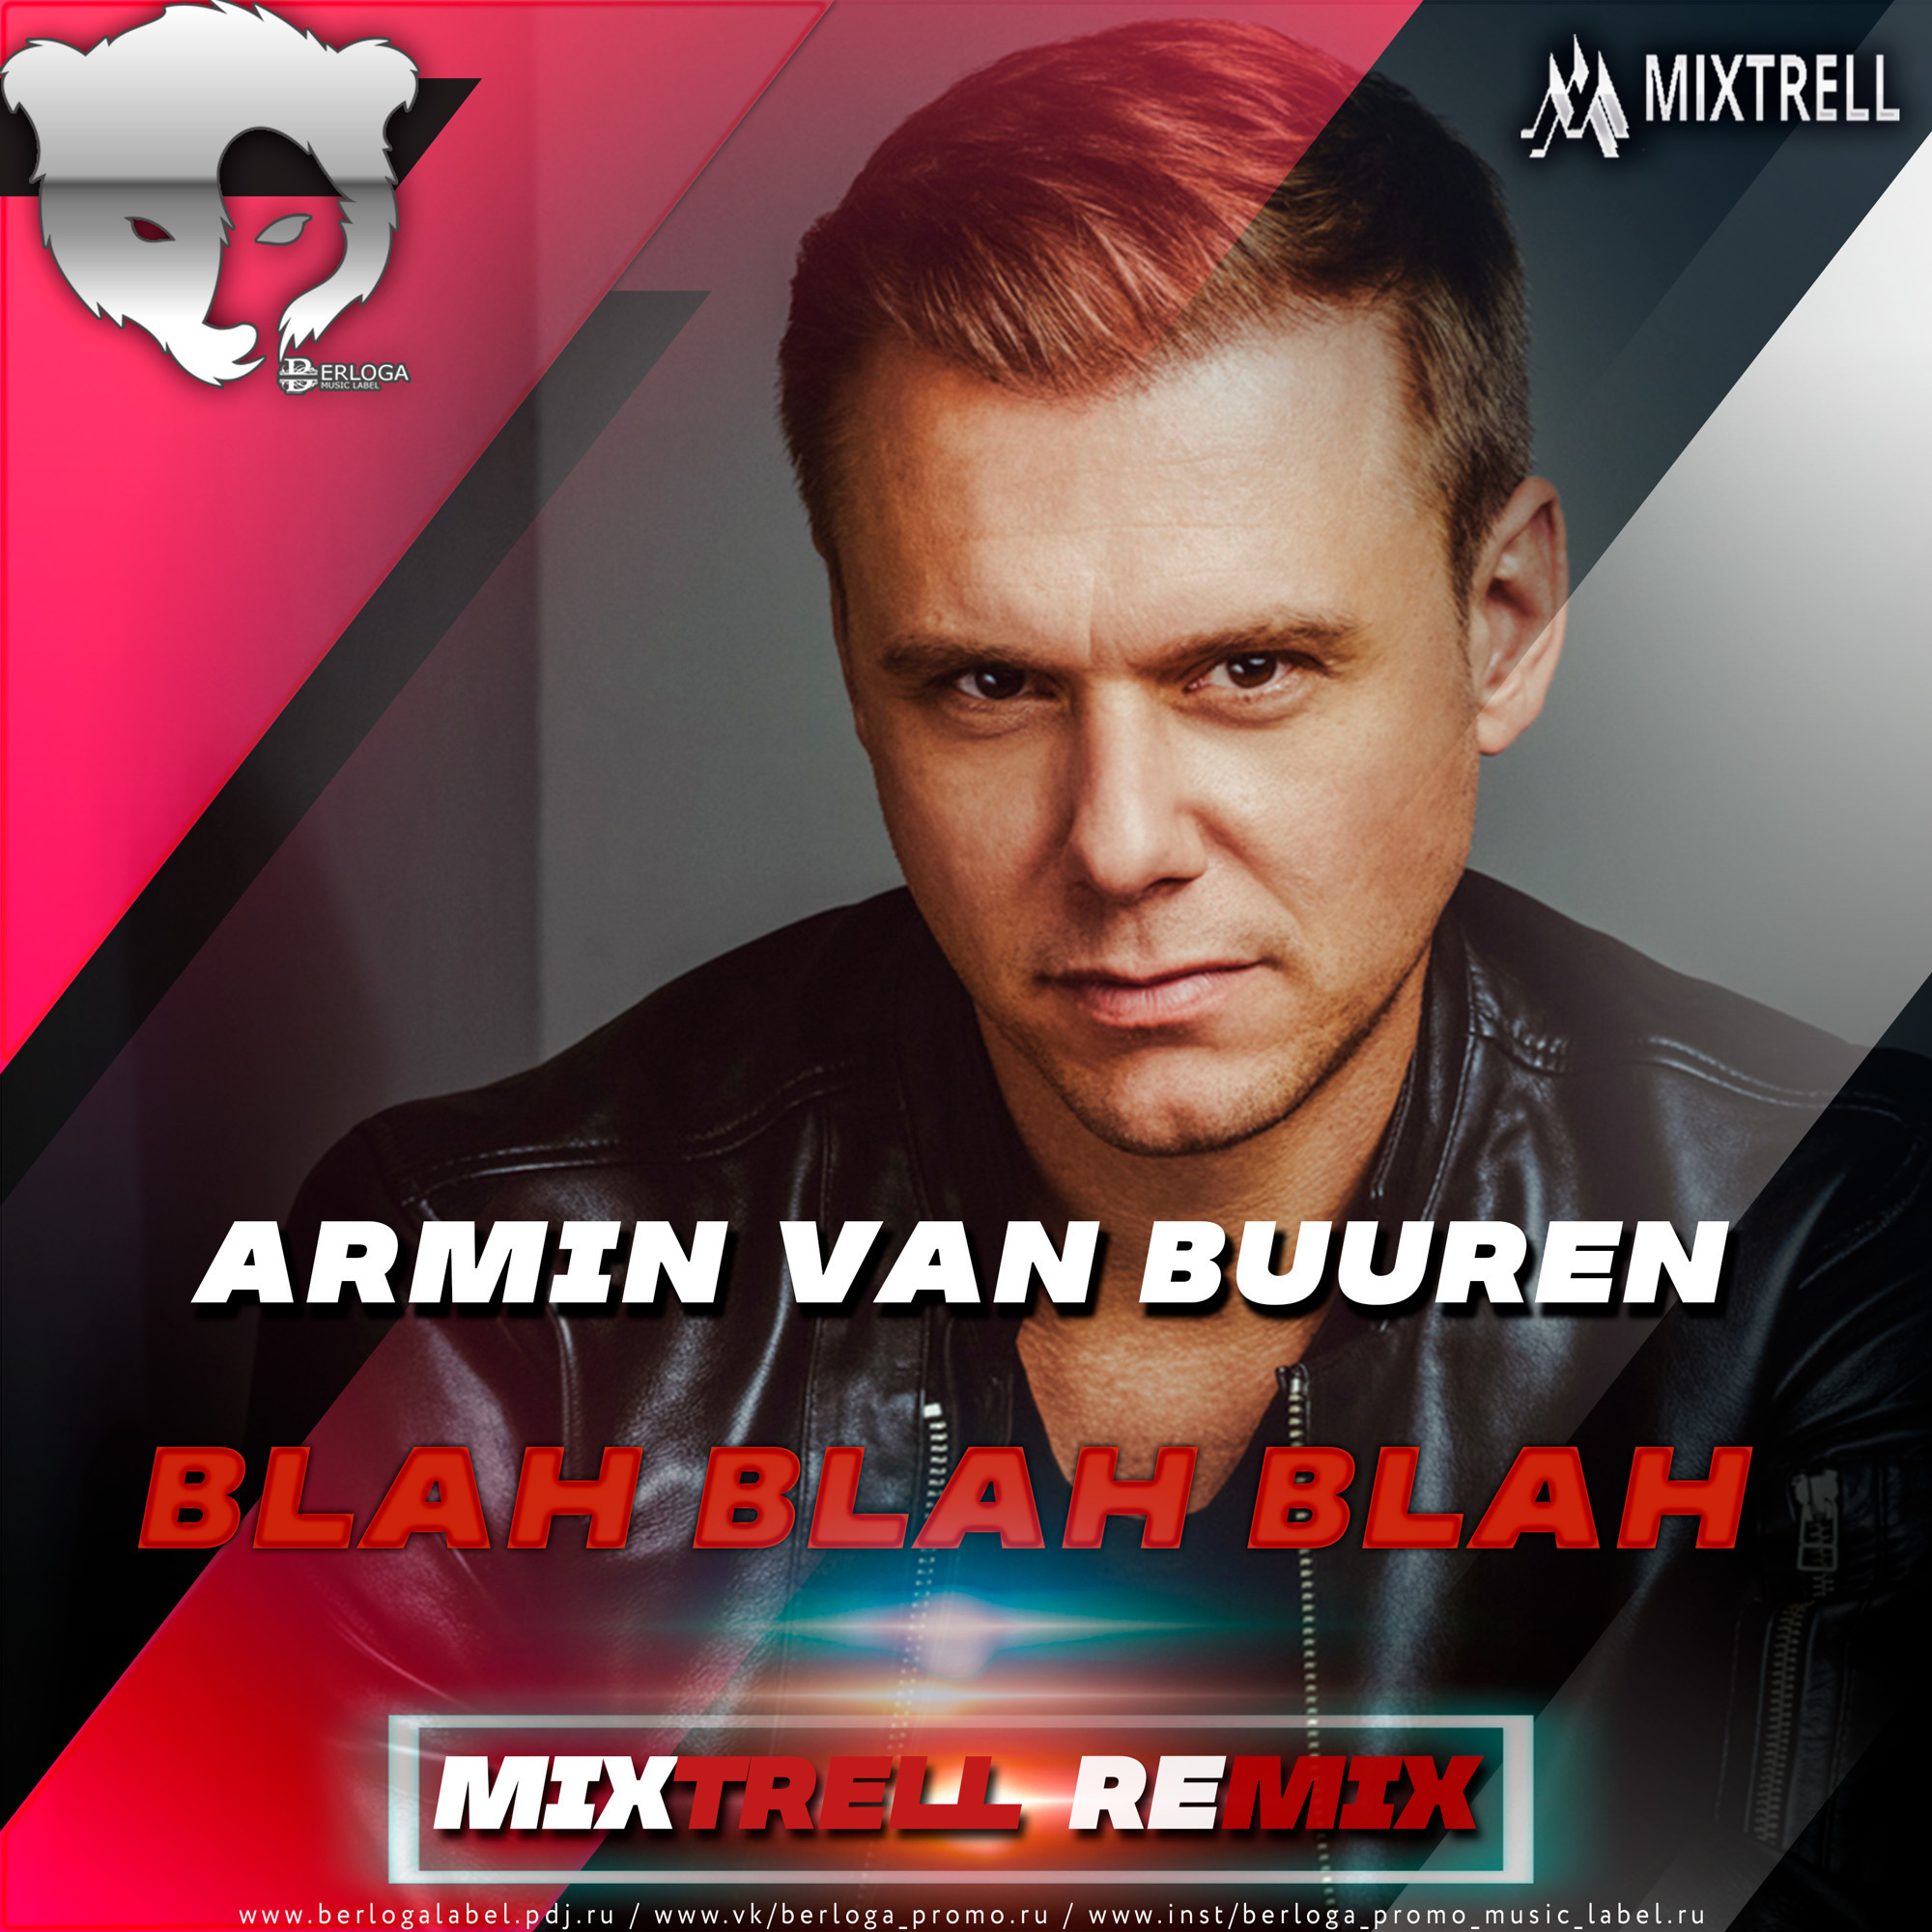 Armin Van Buuren - Blah Blah Blah (Mixtrell Remix Radio Edit)